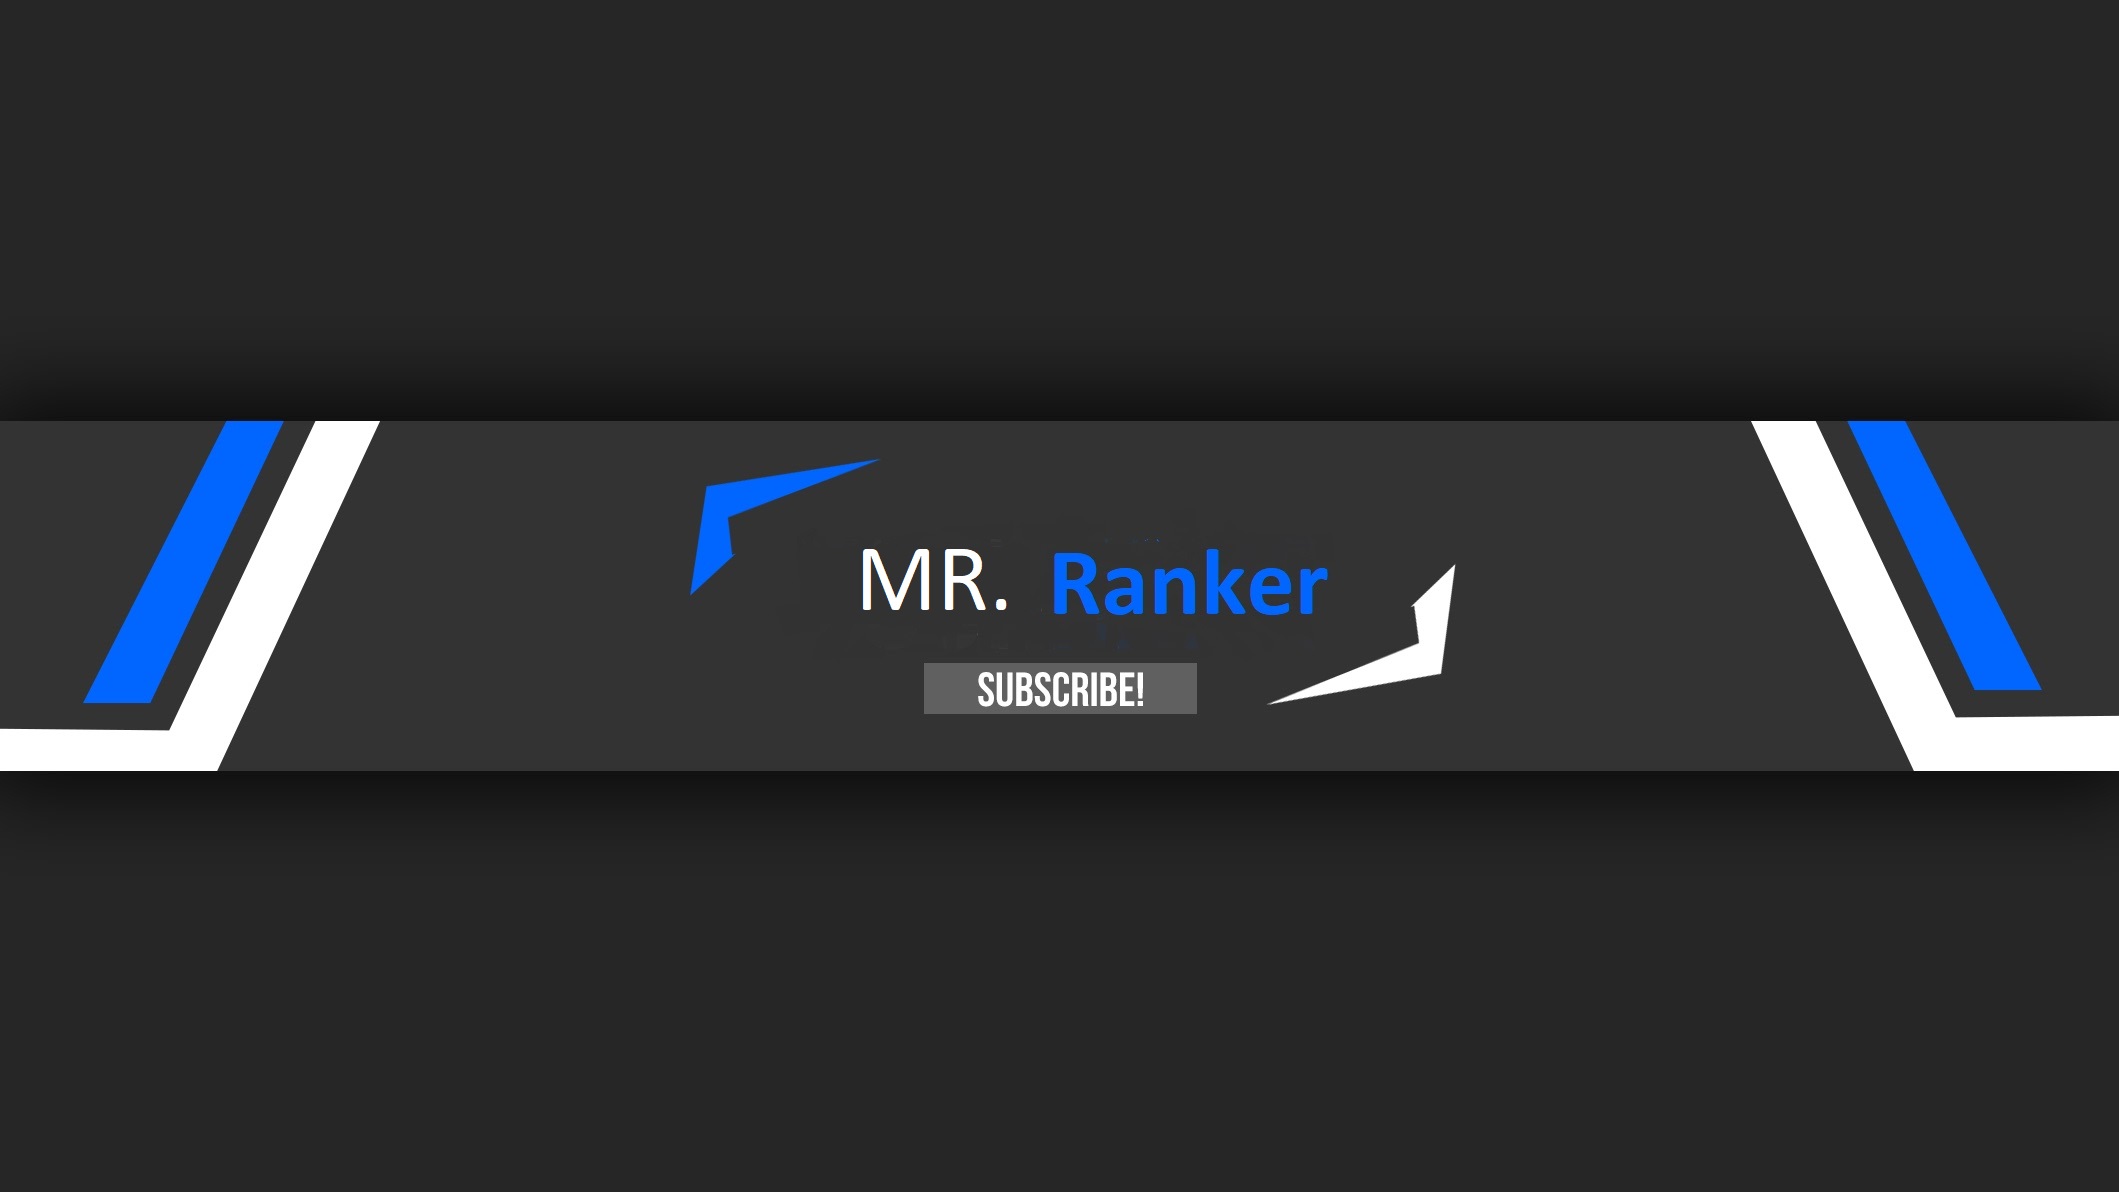 MR. Ranker